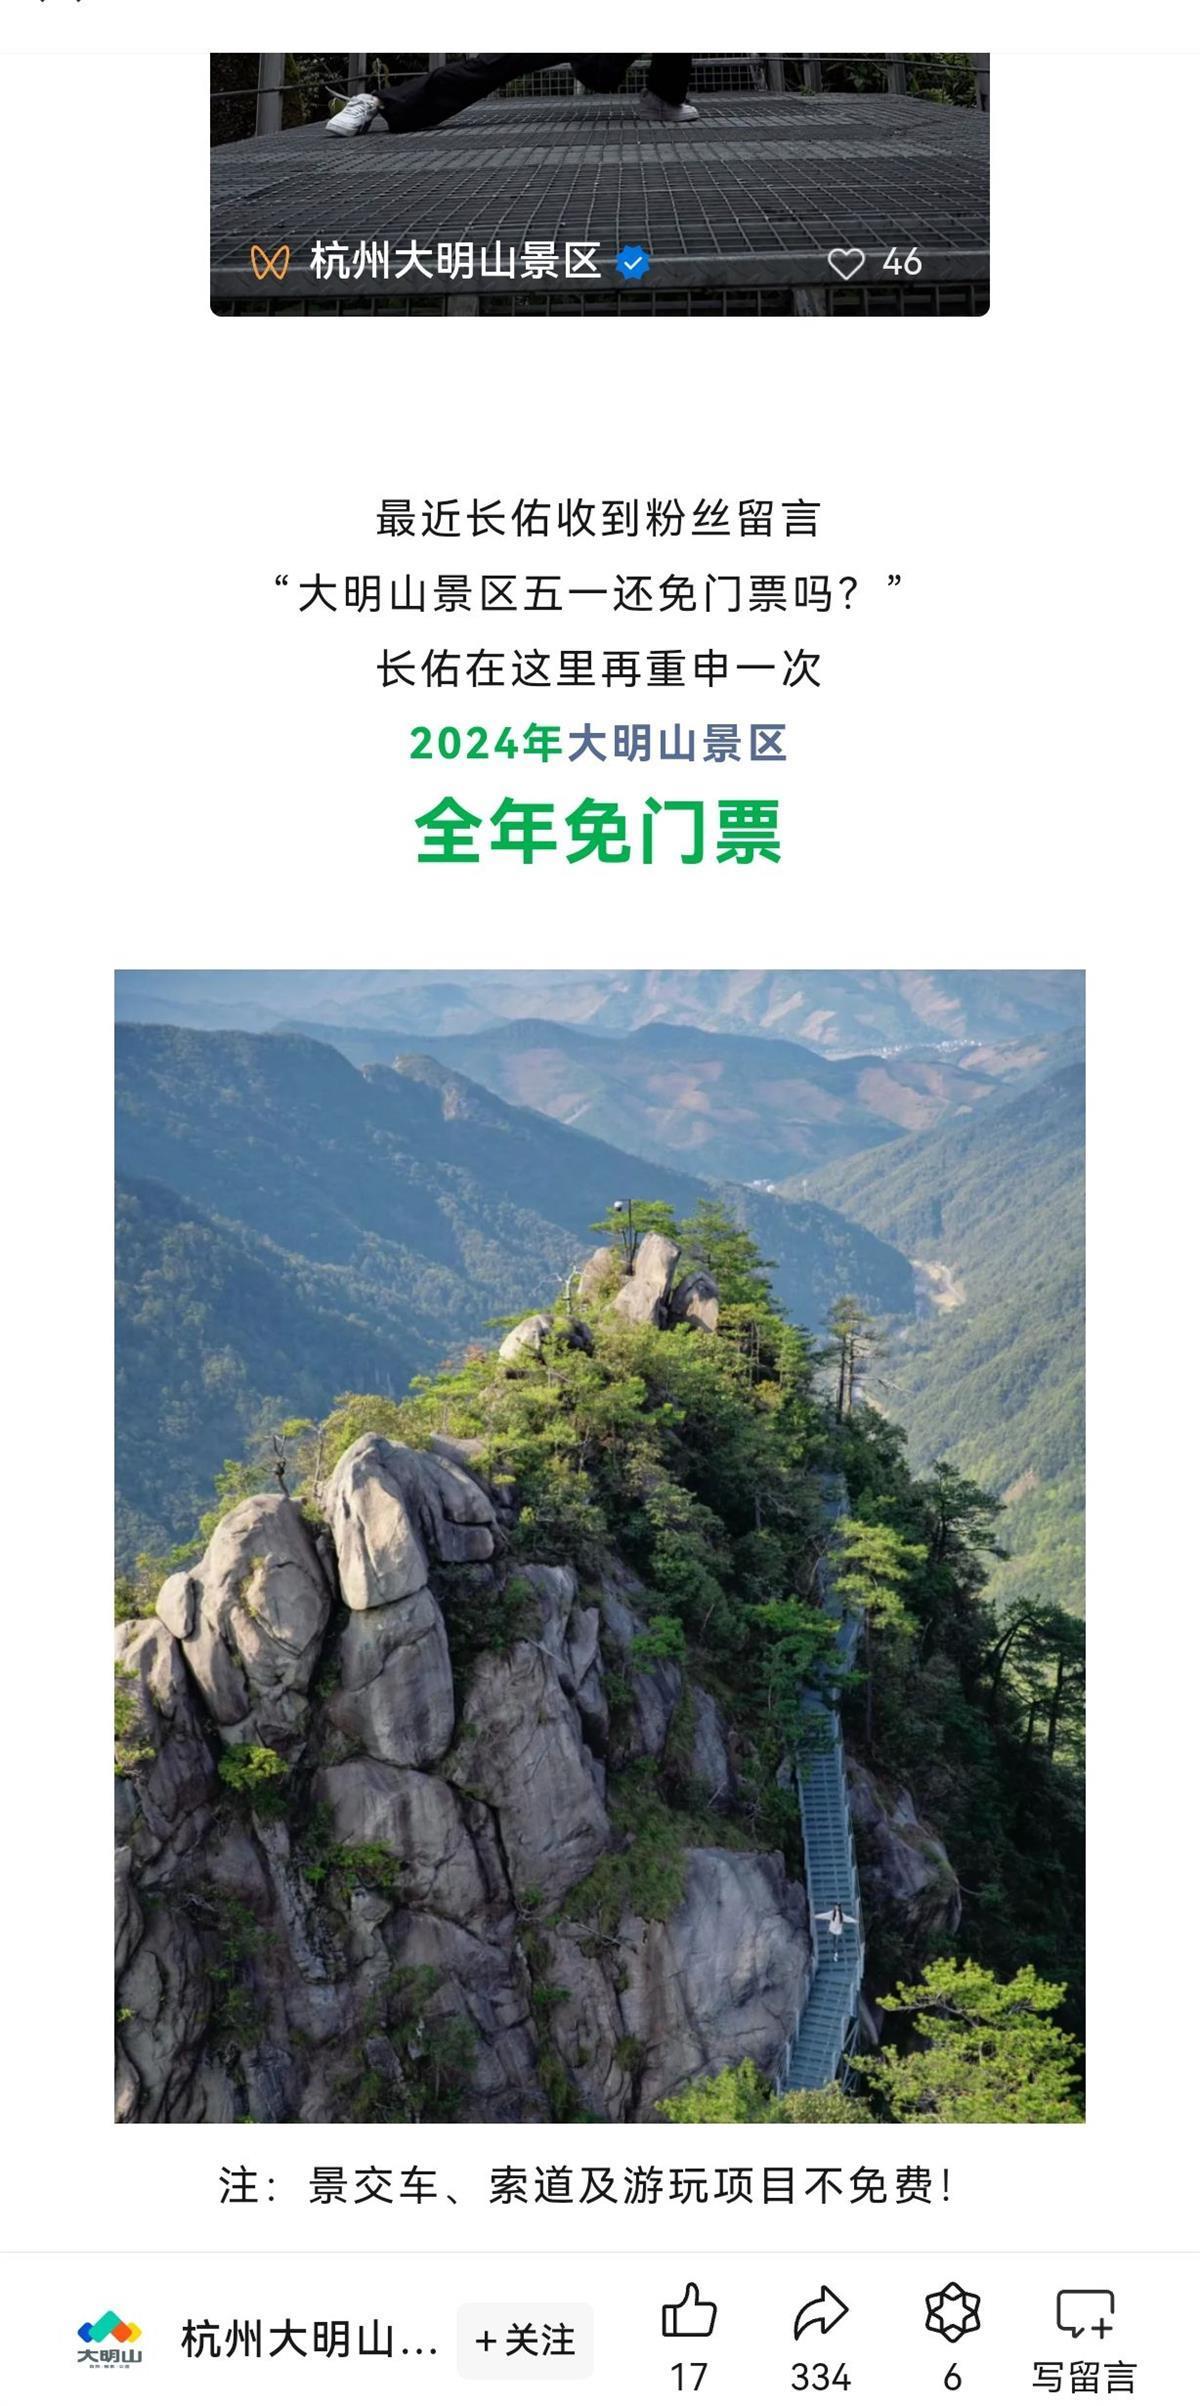 上述游客所反映的大明山景区位于浙江省杭州市临安区西部,是国家4a级